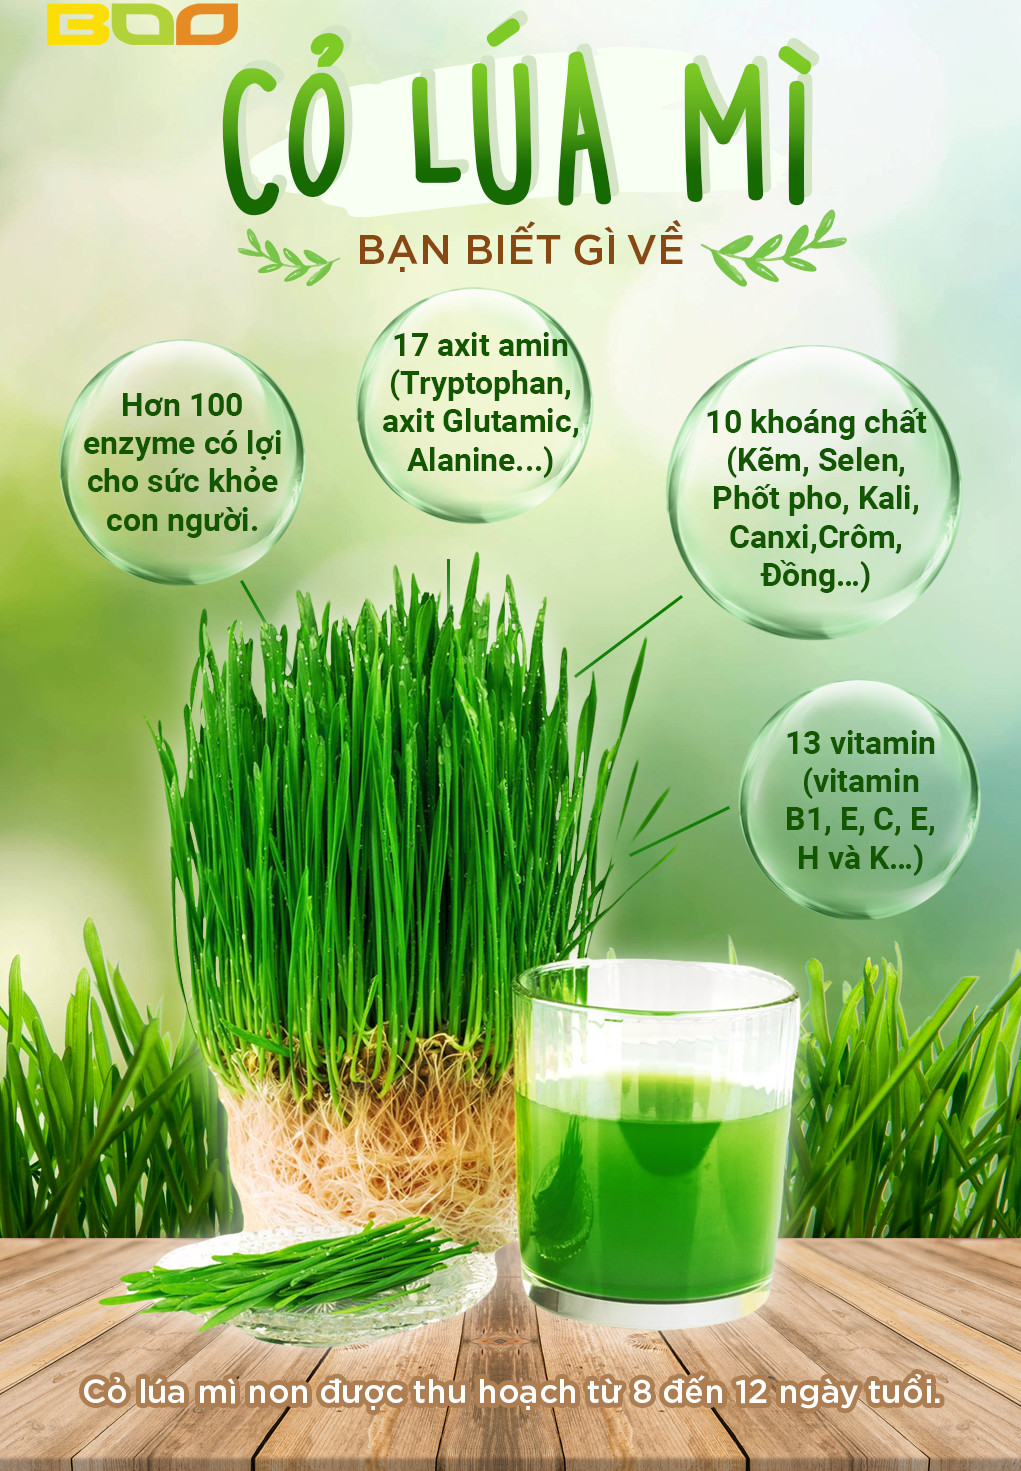 Bột cỏ lúa mì hữu cơ nguyên chất sấy lạnh Dalahouse - Hỗ trợ thải độc Gan và Máu, Ngăn ngừa và hỗ trợ tiểu đường, Hỗ trợ tiêu hóa, giảm táo bón